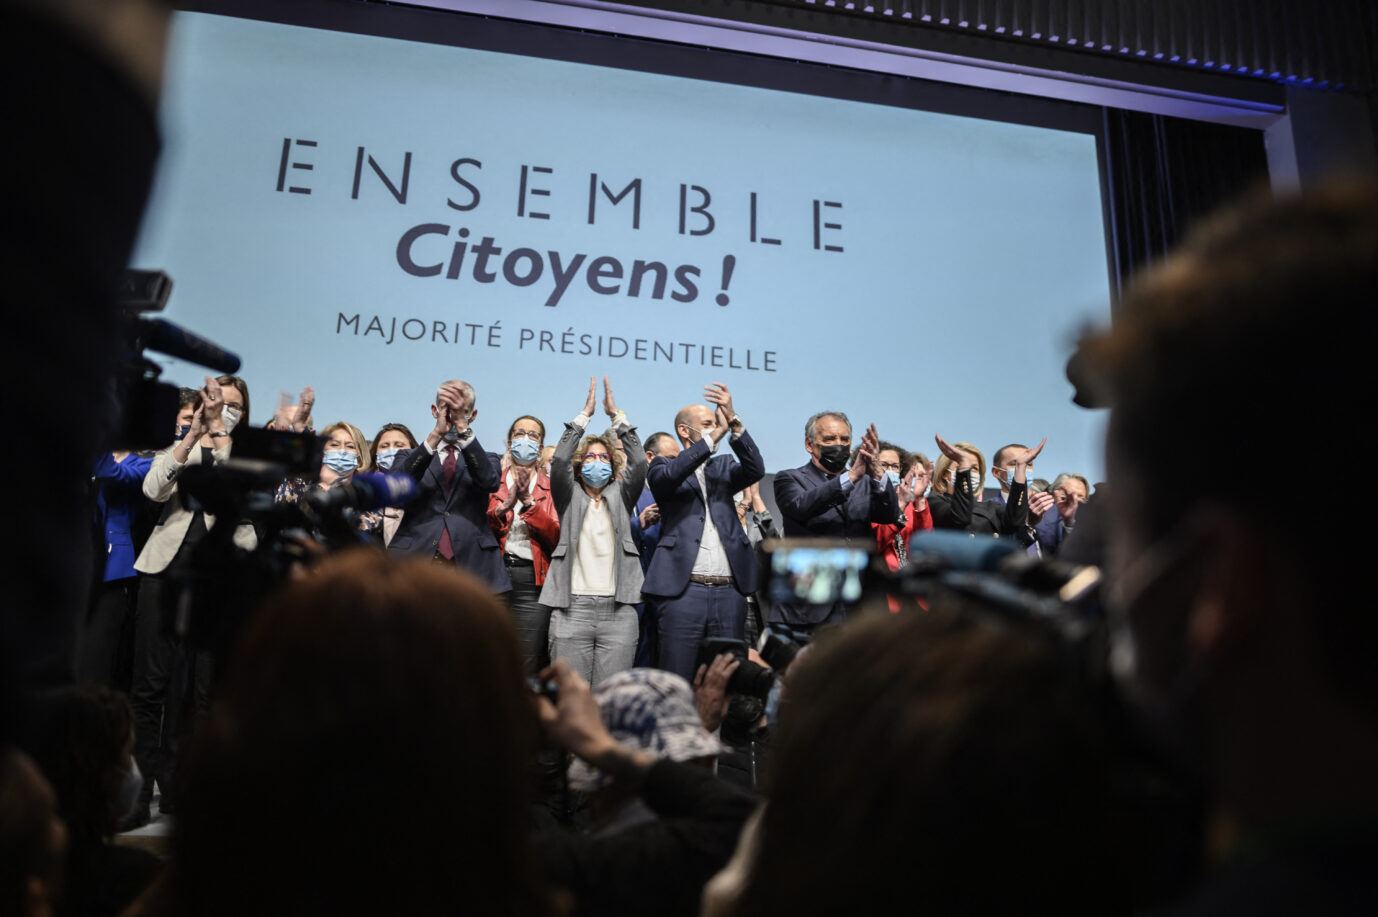 Veranstaltung anläßlich der Gründung des politischen Bündnisses Ensemble Citoyens, das Präsident Emmanuel Macron zur Wiederwahl verhelfen soll